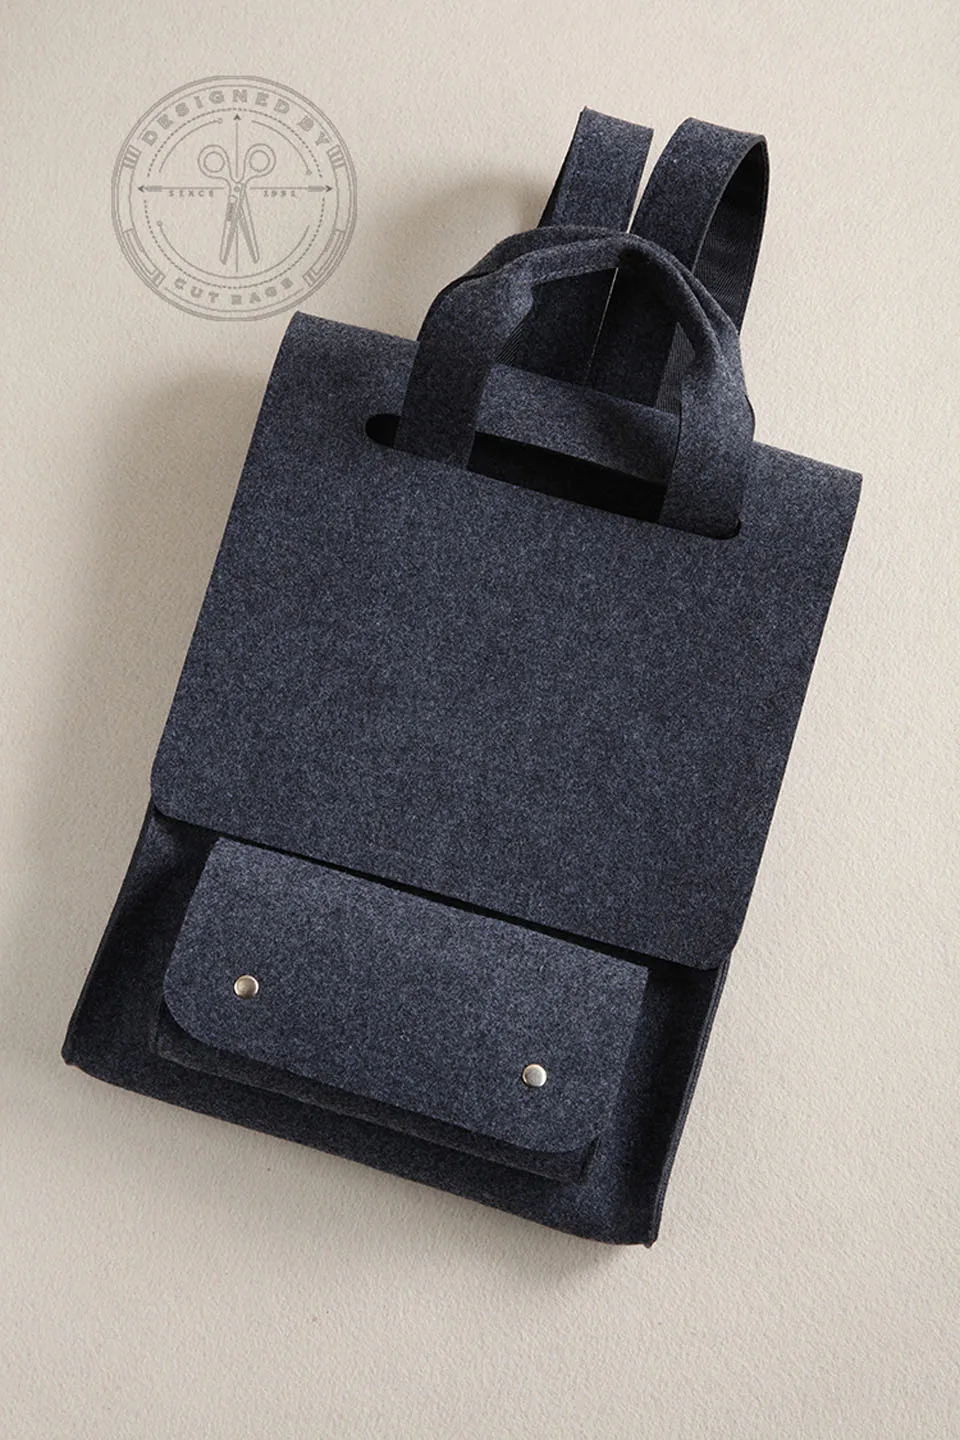 Шерстяной войлочный рюкзак для ноутбука 14 15,6 рукав сумка для ноутбука черный серый Рюкзак для Macbook lenovo Dell, et